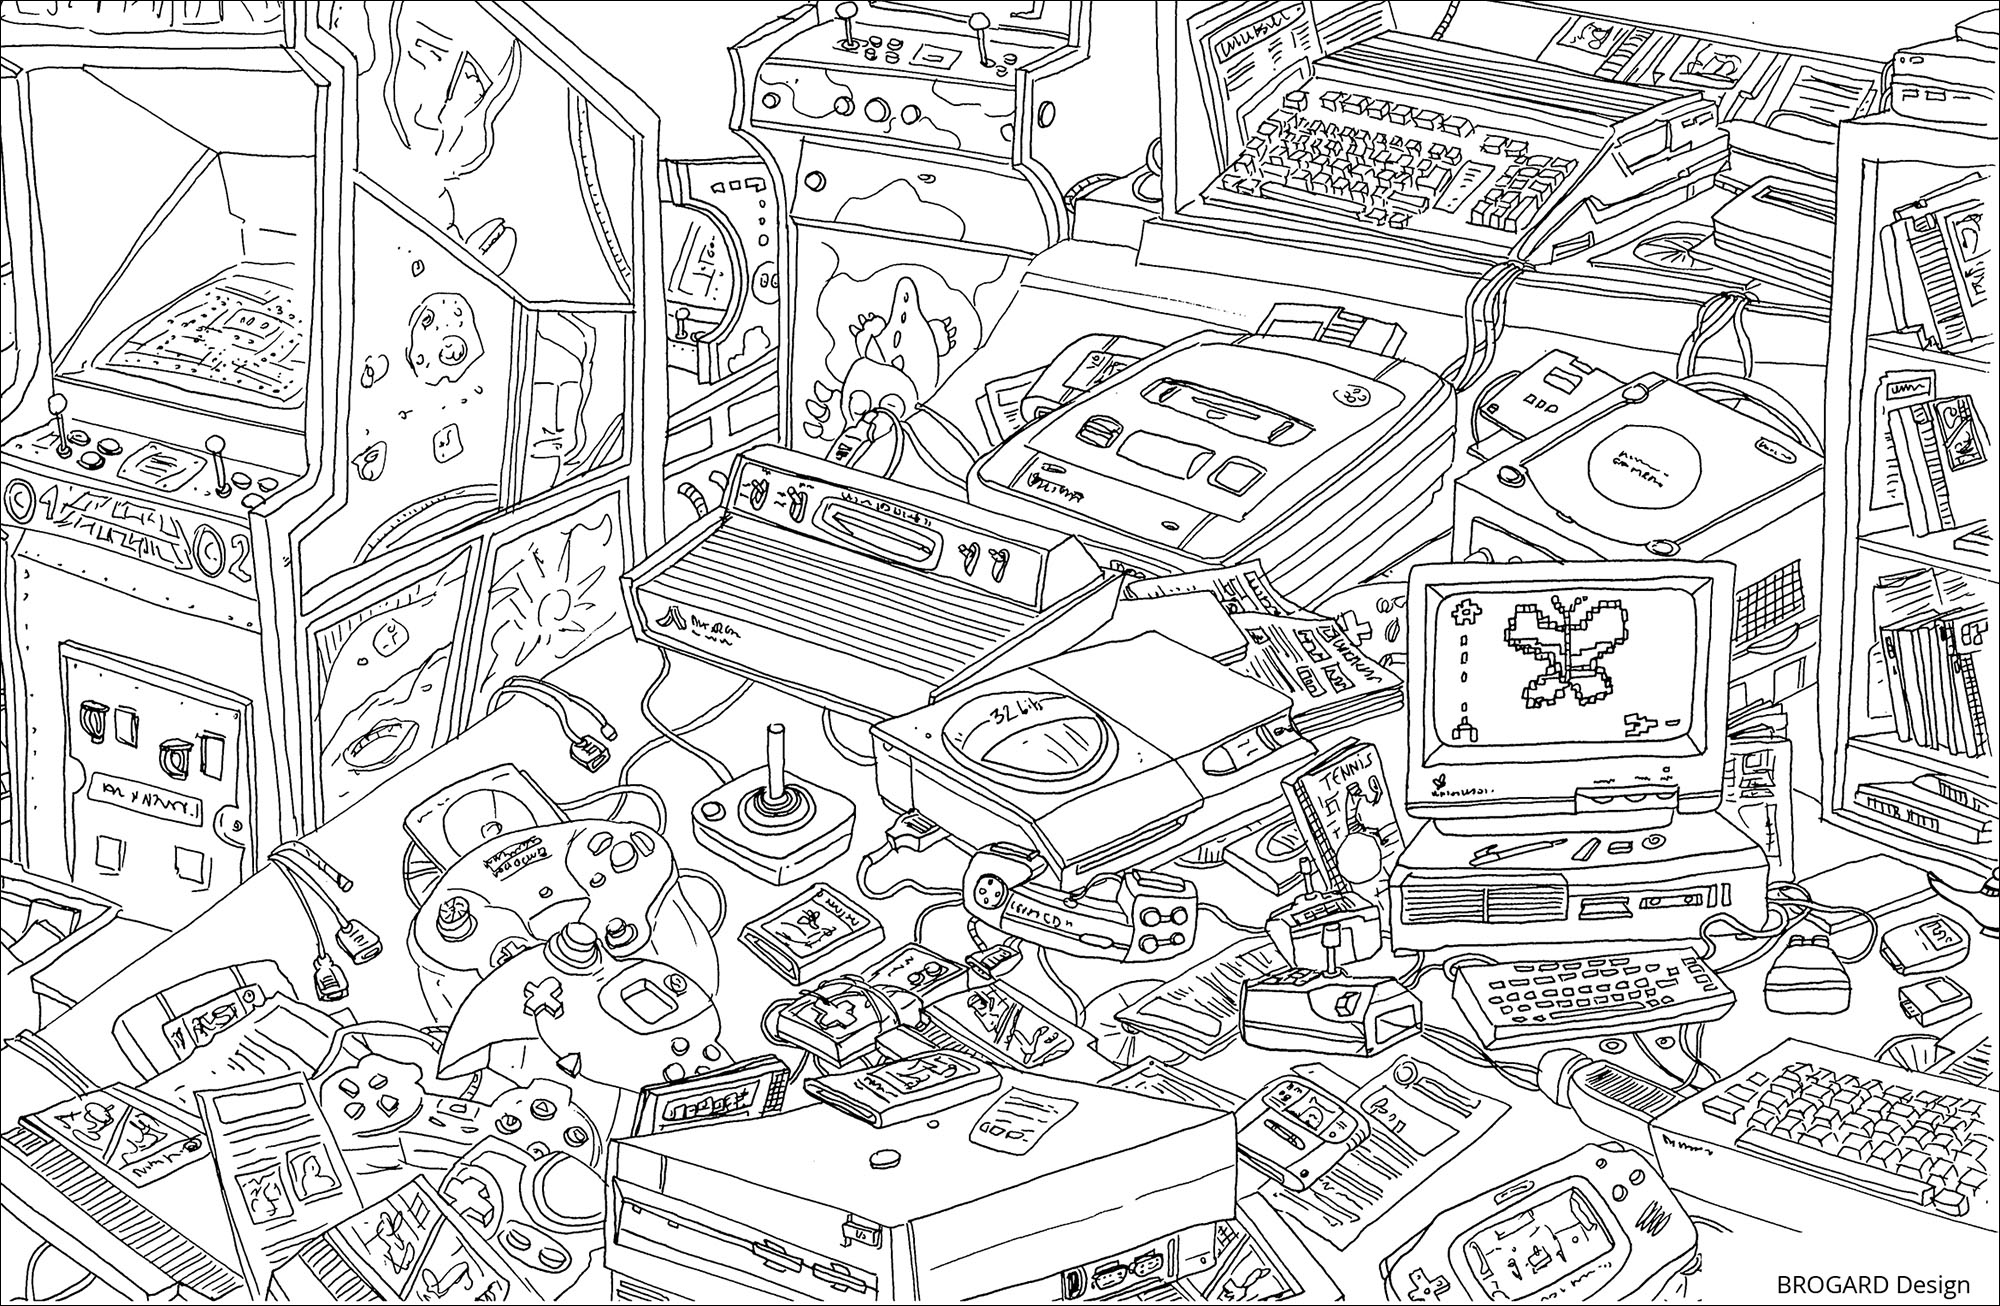 Desenho com pequenos detalhes inspirador dos jogos de vídeo dos anos 90